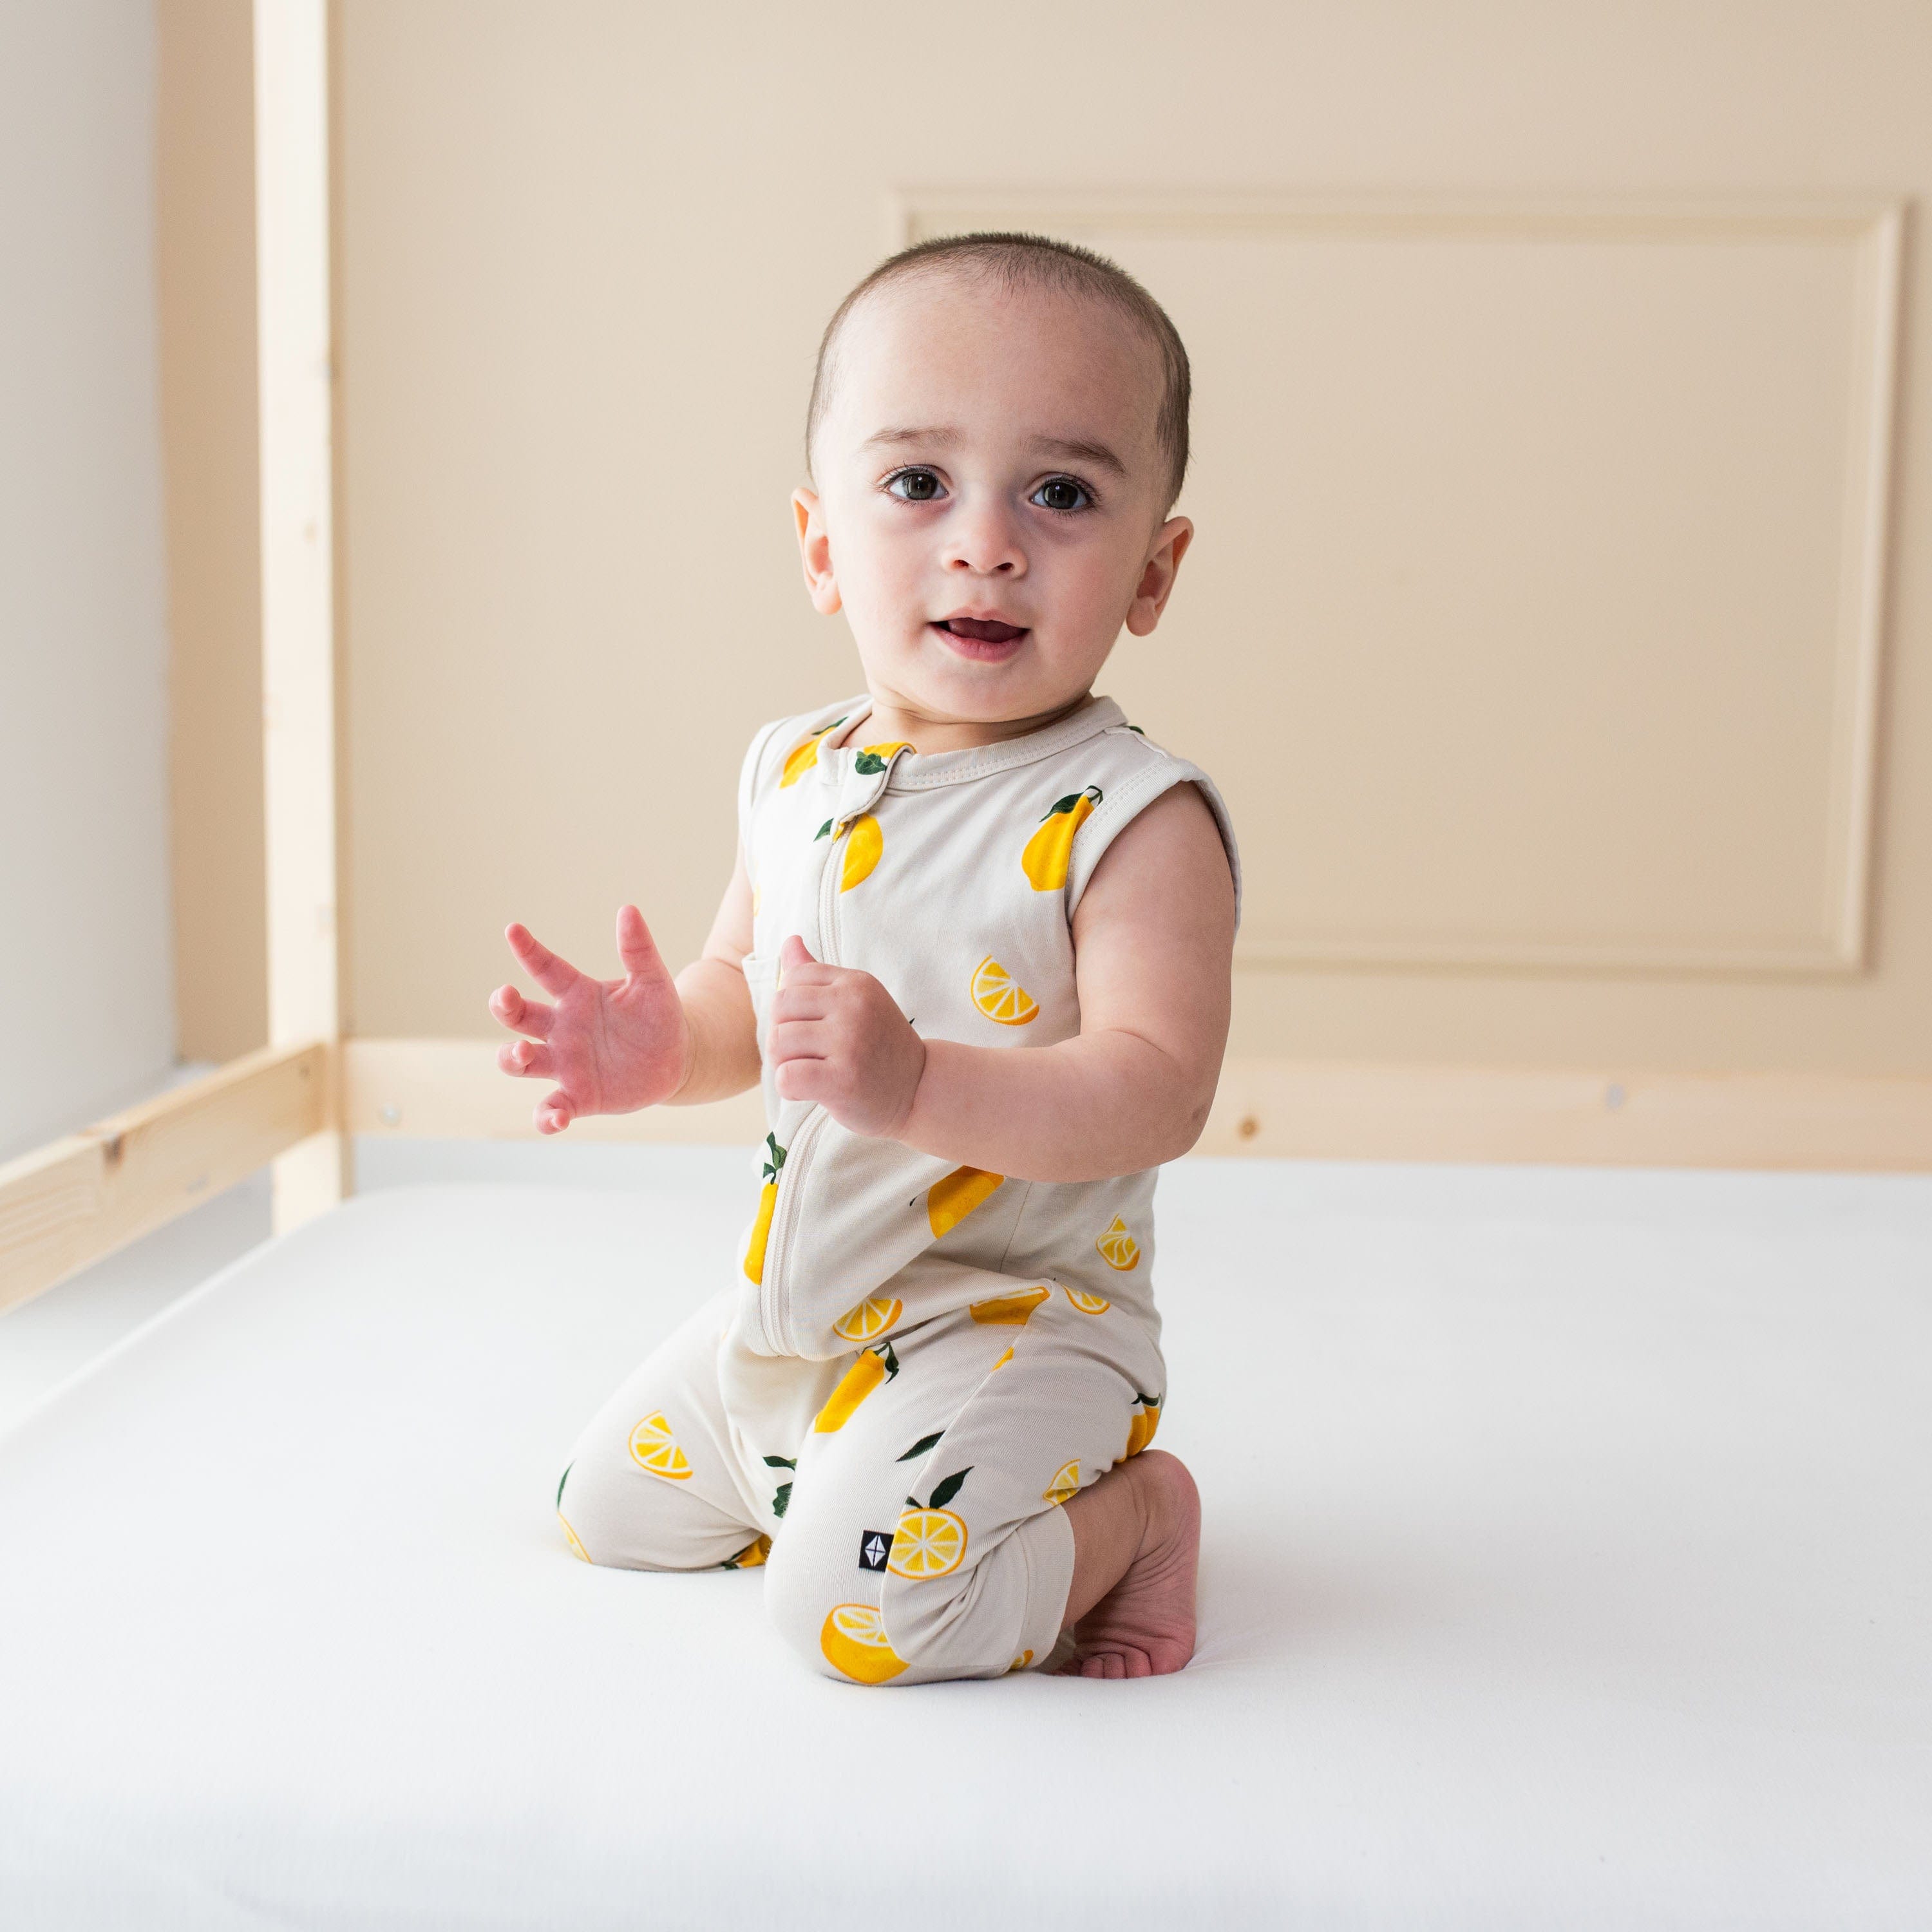 Infant wearing bamboo Kyte Baby Zippered Sleeveless Romper in Lemon pattern